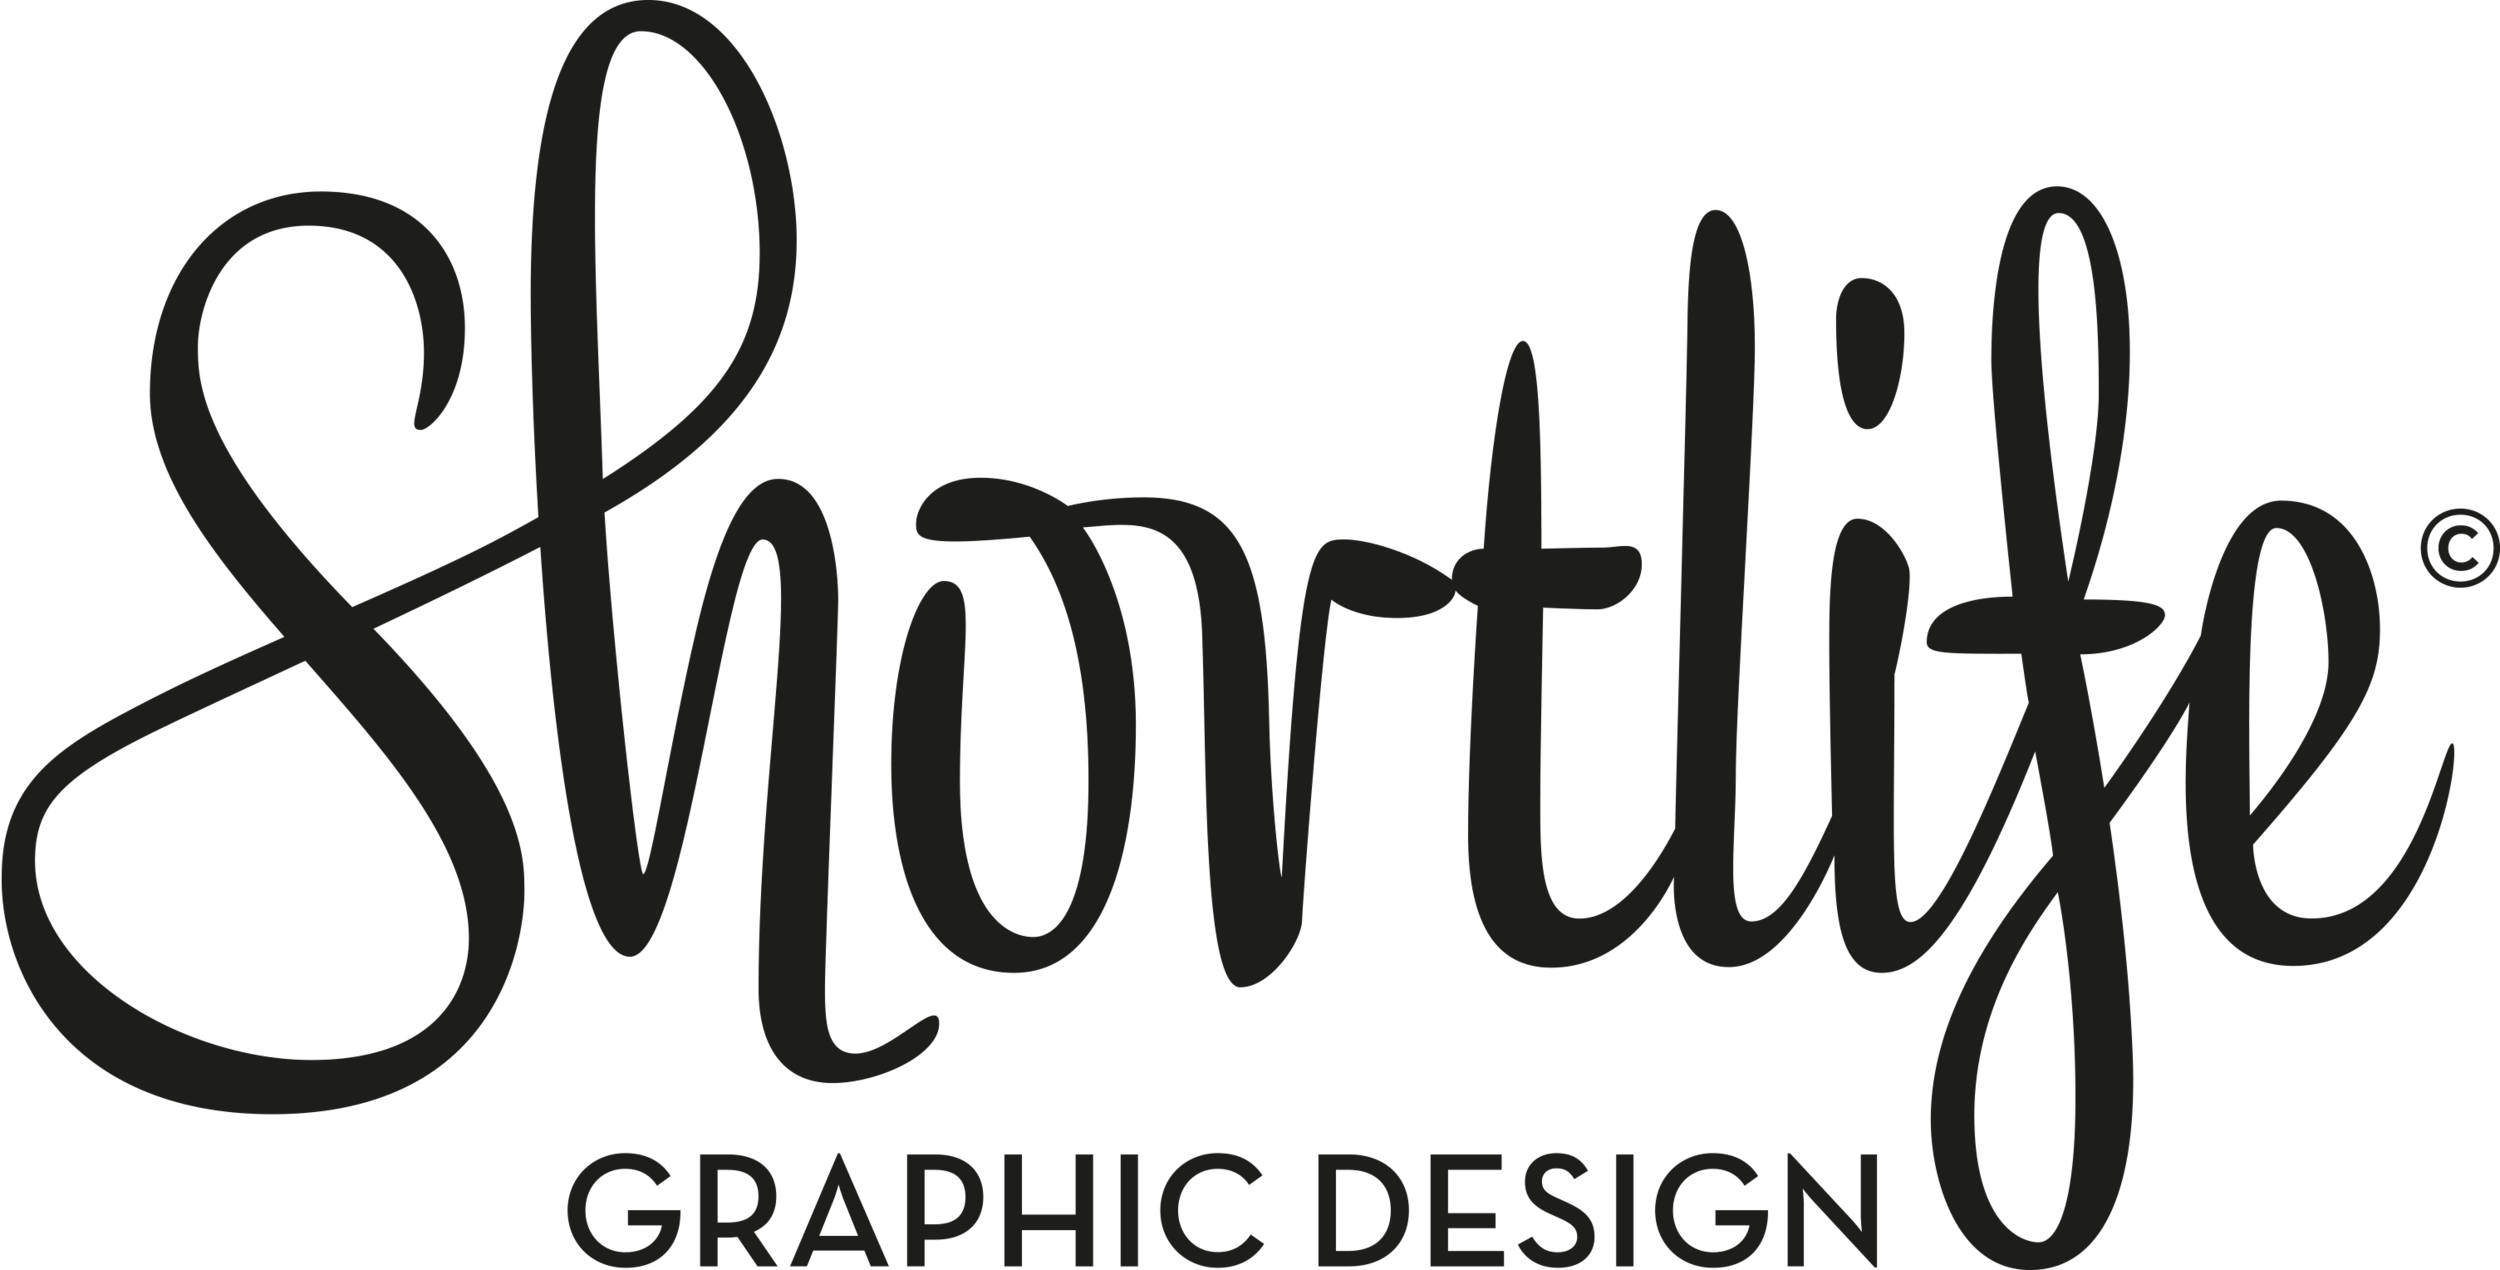 Shortlife | Graphic design &amp; illustration by Peter Kortleve